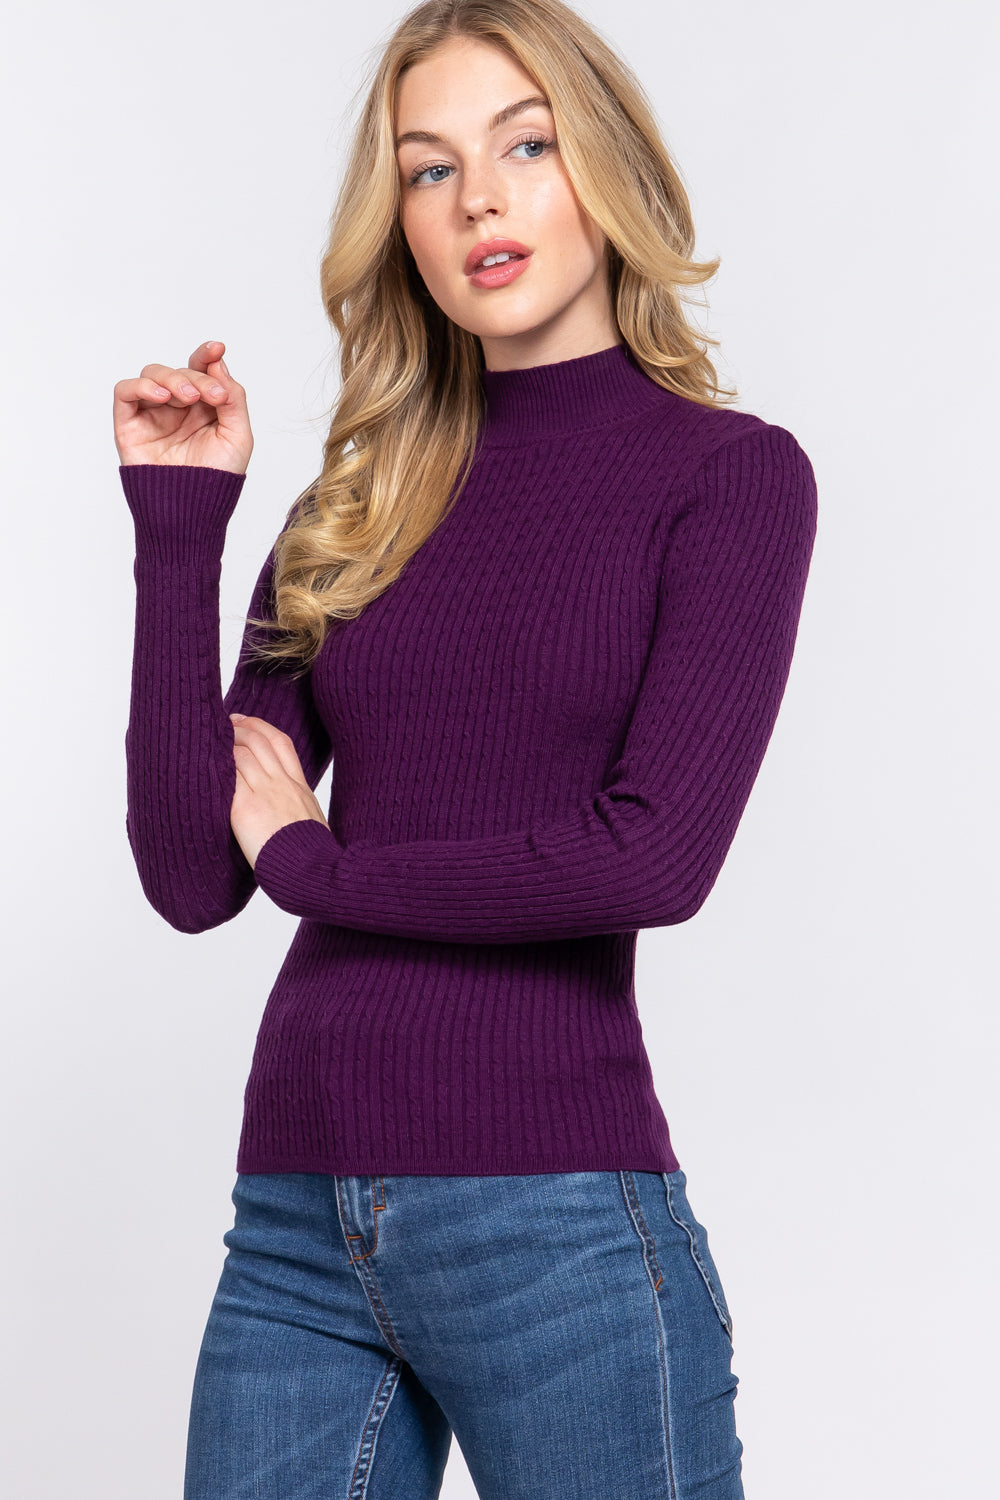 Active Basic Ribbed Mock Neck Sweater Shirts & Tops RYSE Clothing Co.   